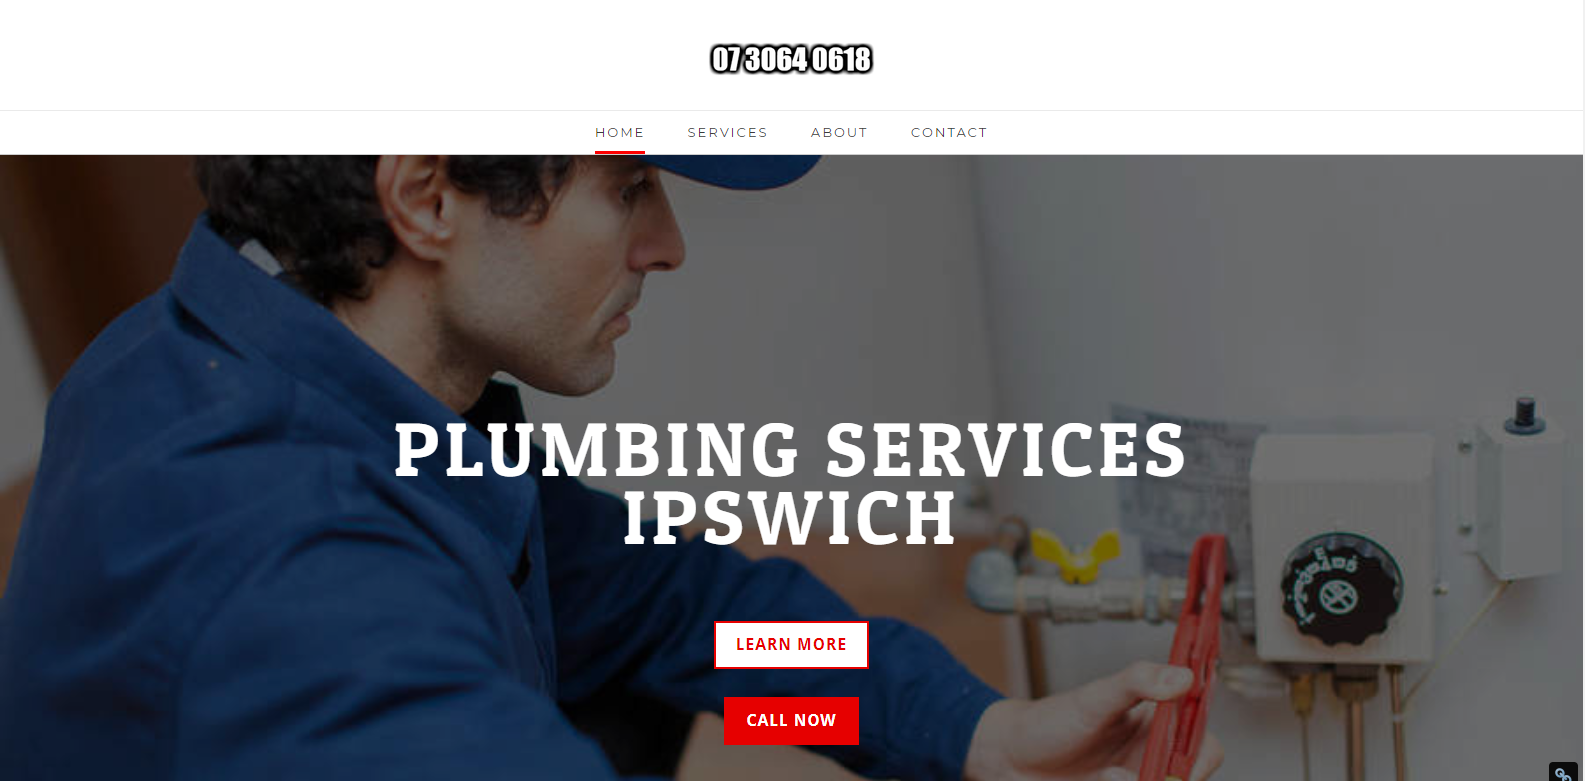 Web Design Ipswich Plumbing